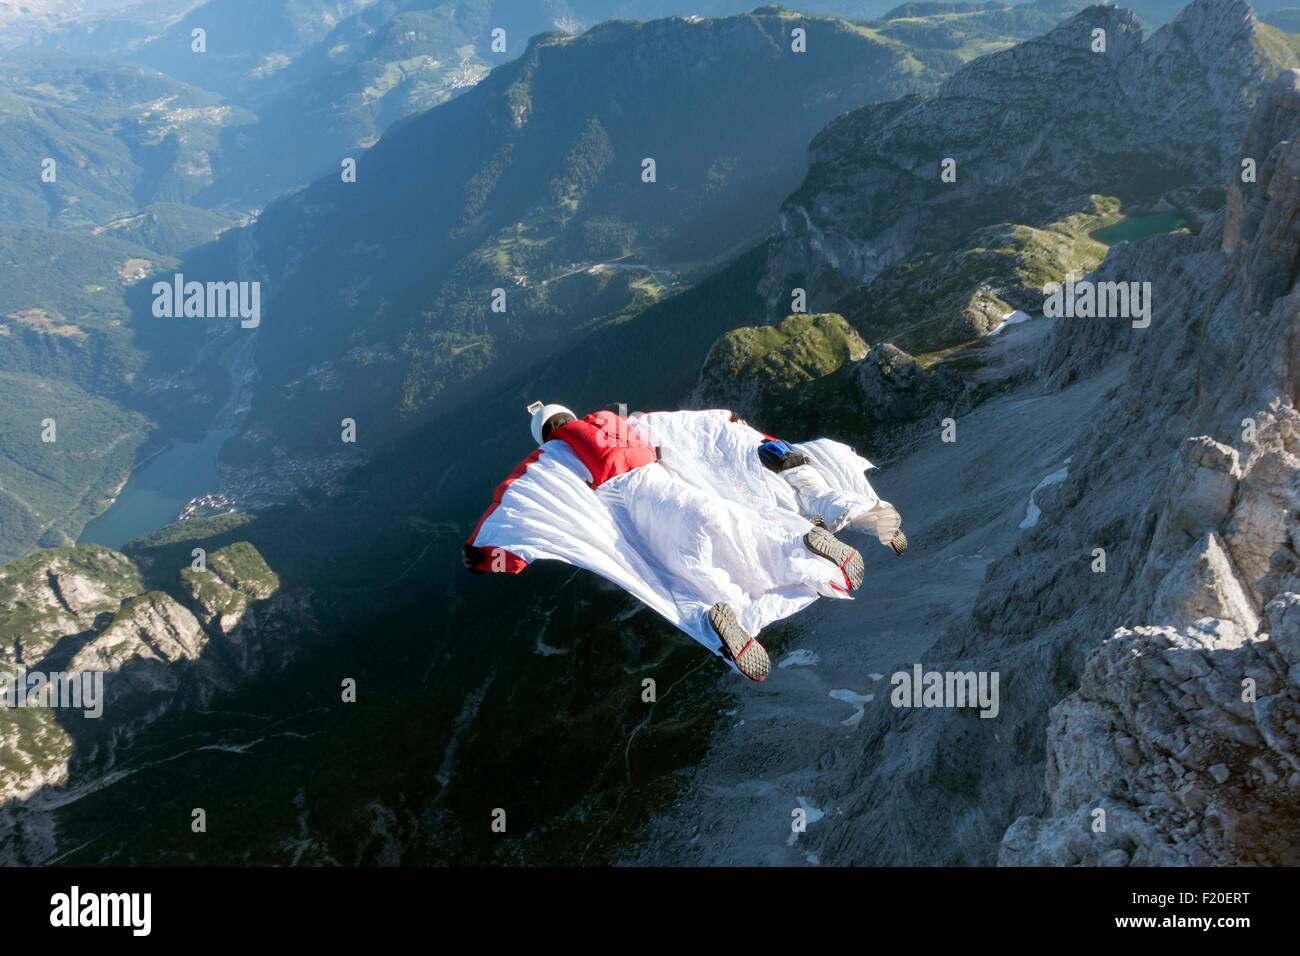 Deux hommes cavaliers de base de Mountain Flying wingsuit, Dolomites, Italie Banque D'Images